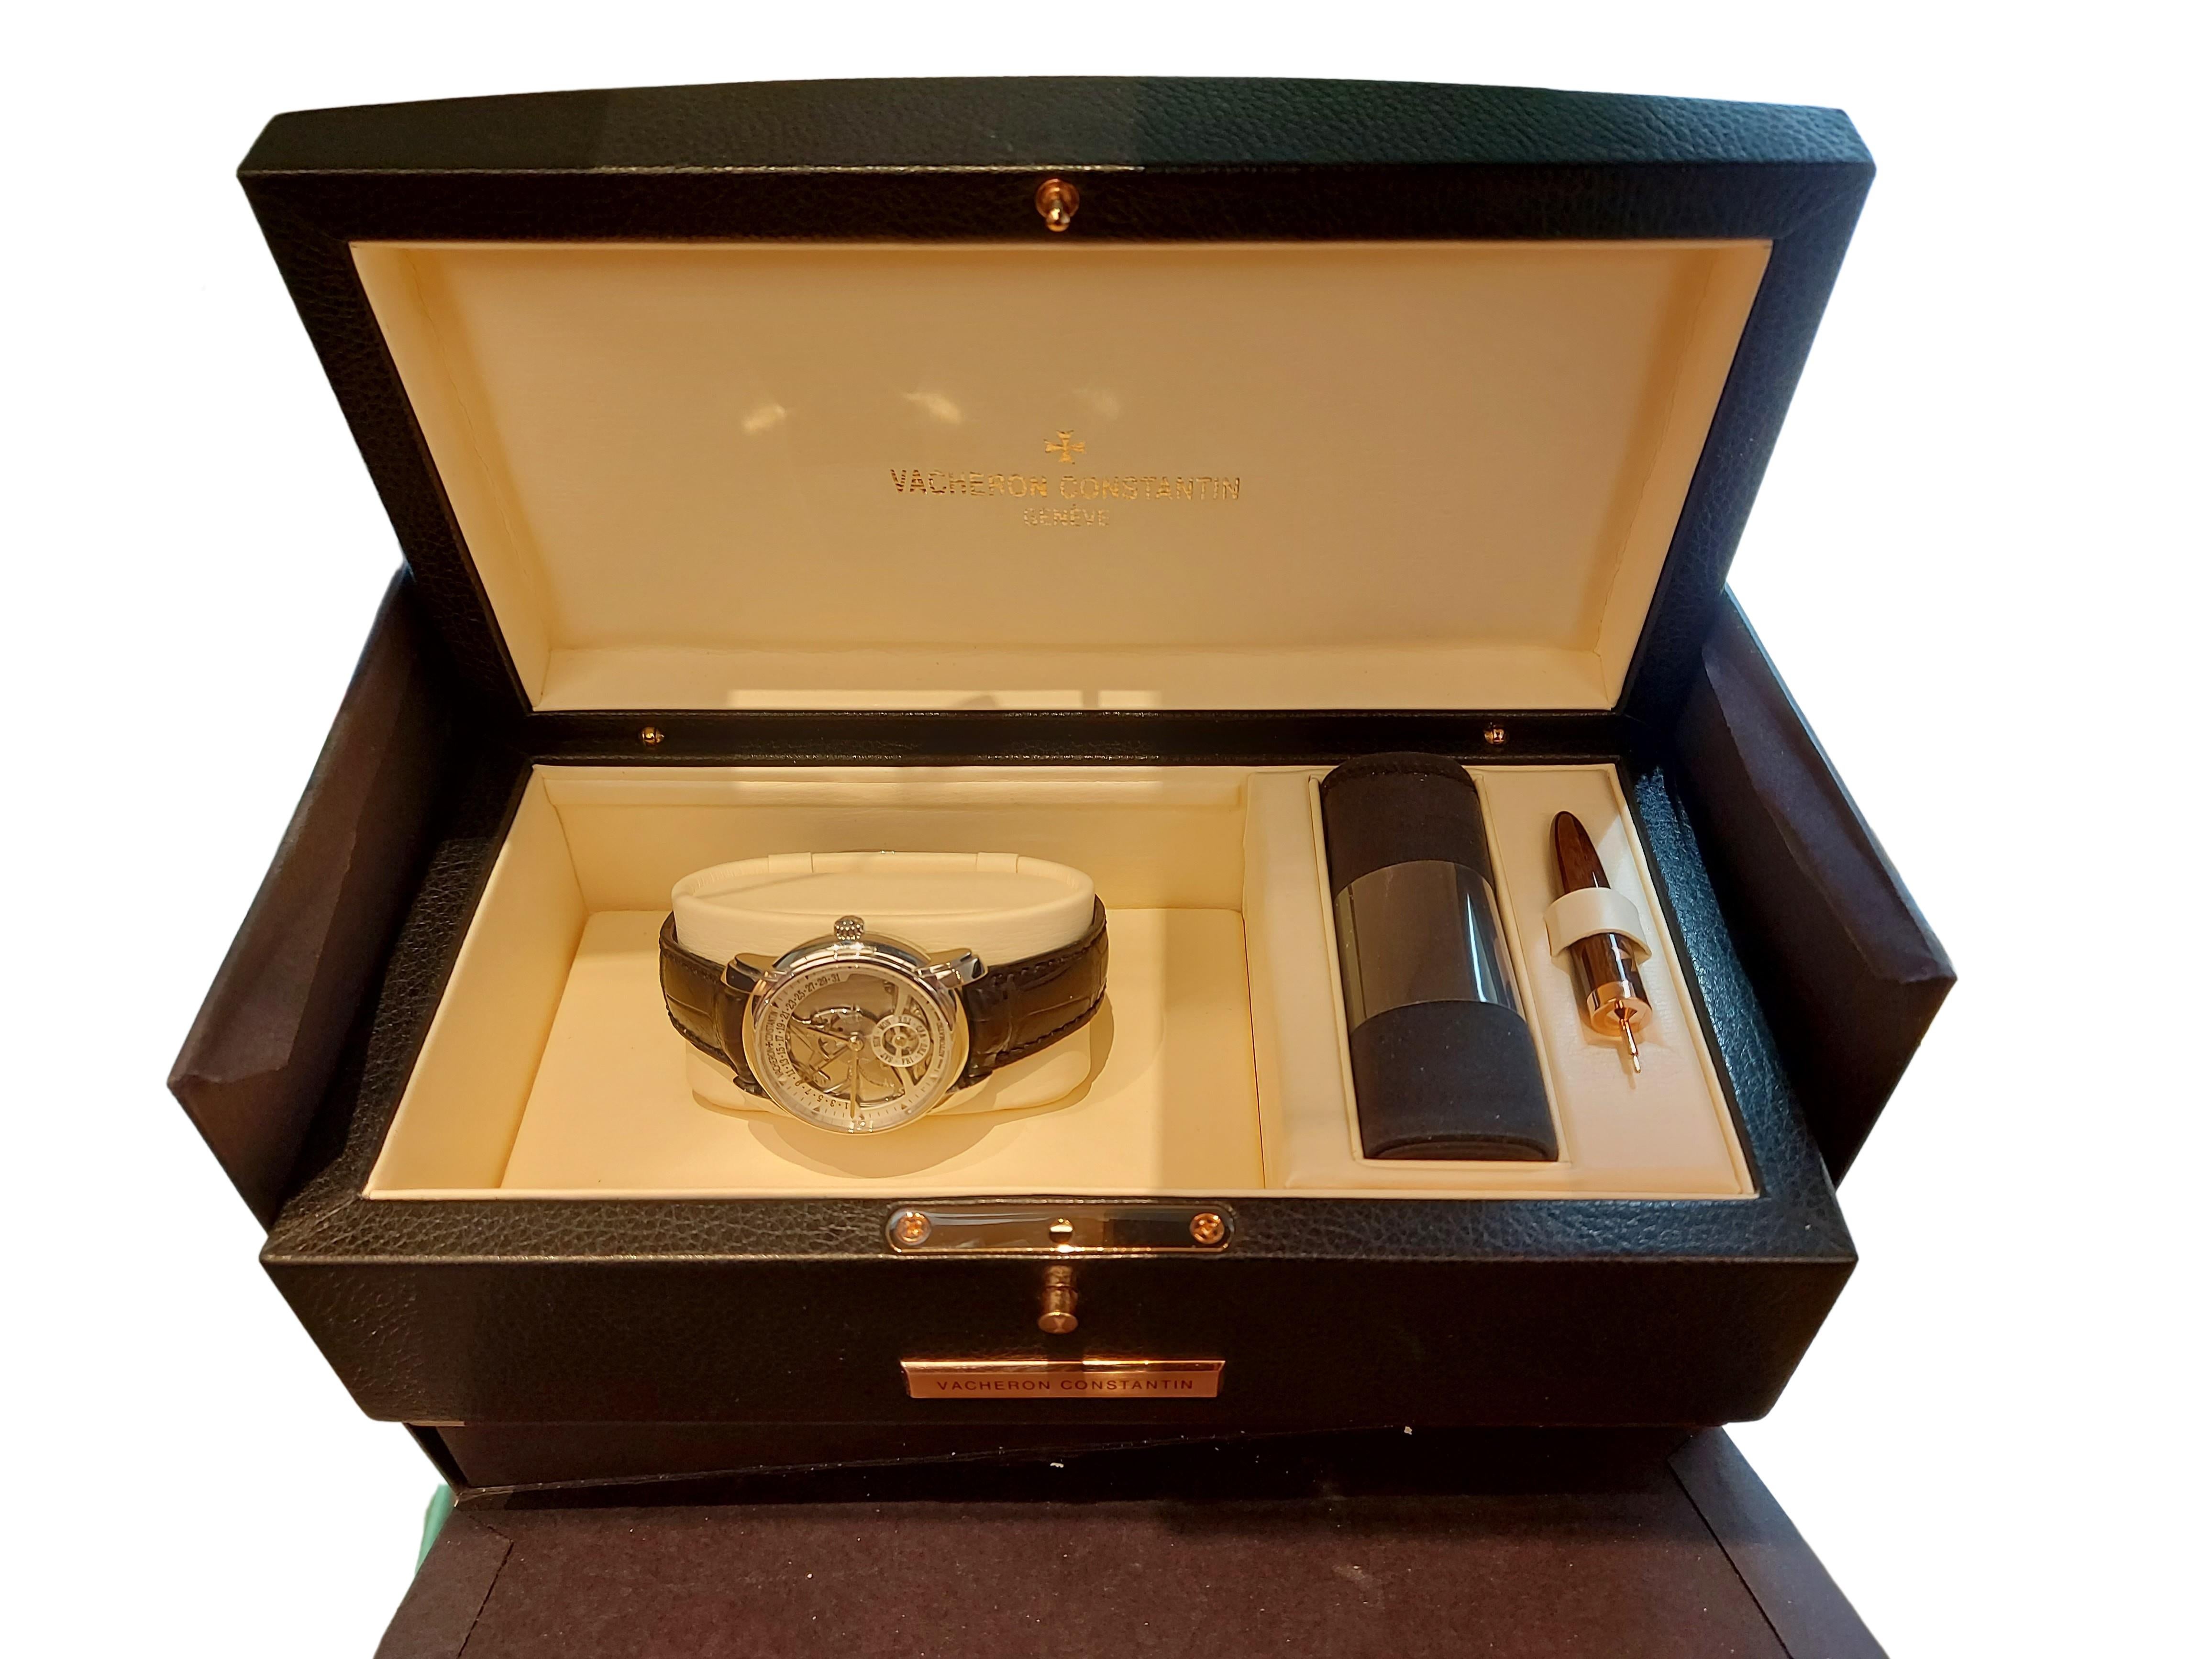 Platinum Vacheron Constantin Skeleton Watch, Automatic, Les Historique, Limited For Sale 10